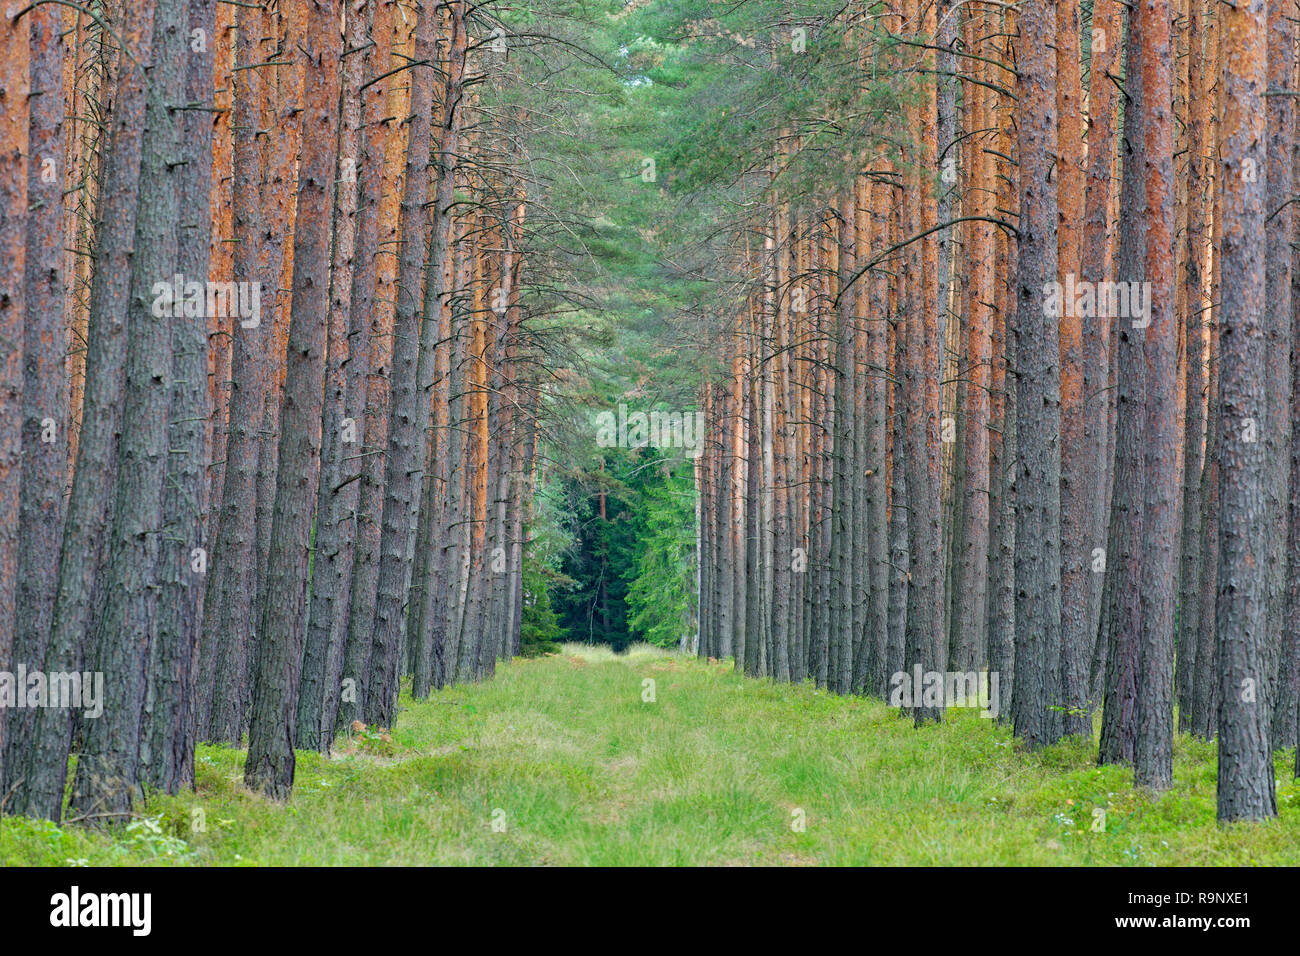 Di Pino silvestre (Pinus sylvestris) tronchi di alberi e parafuoco / fireroad / linea di fuoco / interruzione carburante, bushfire prevenzione nella foresta di conifere Foto Stock